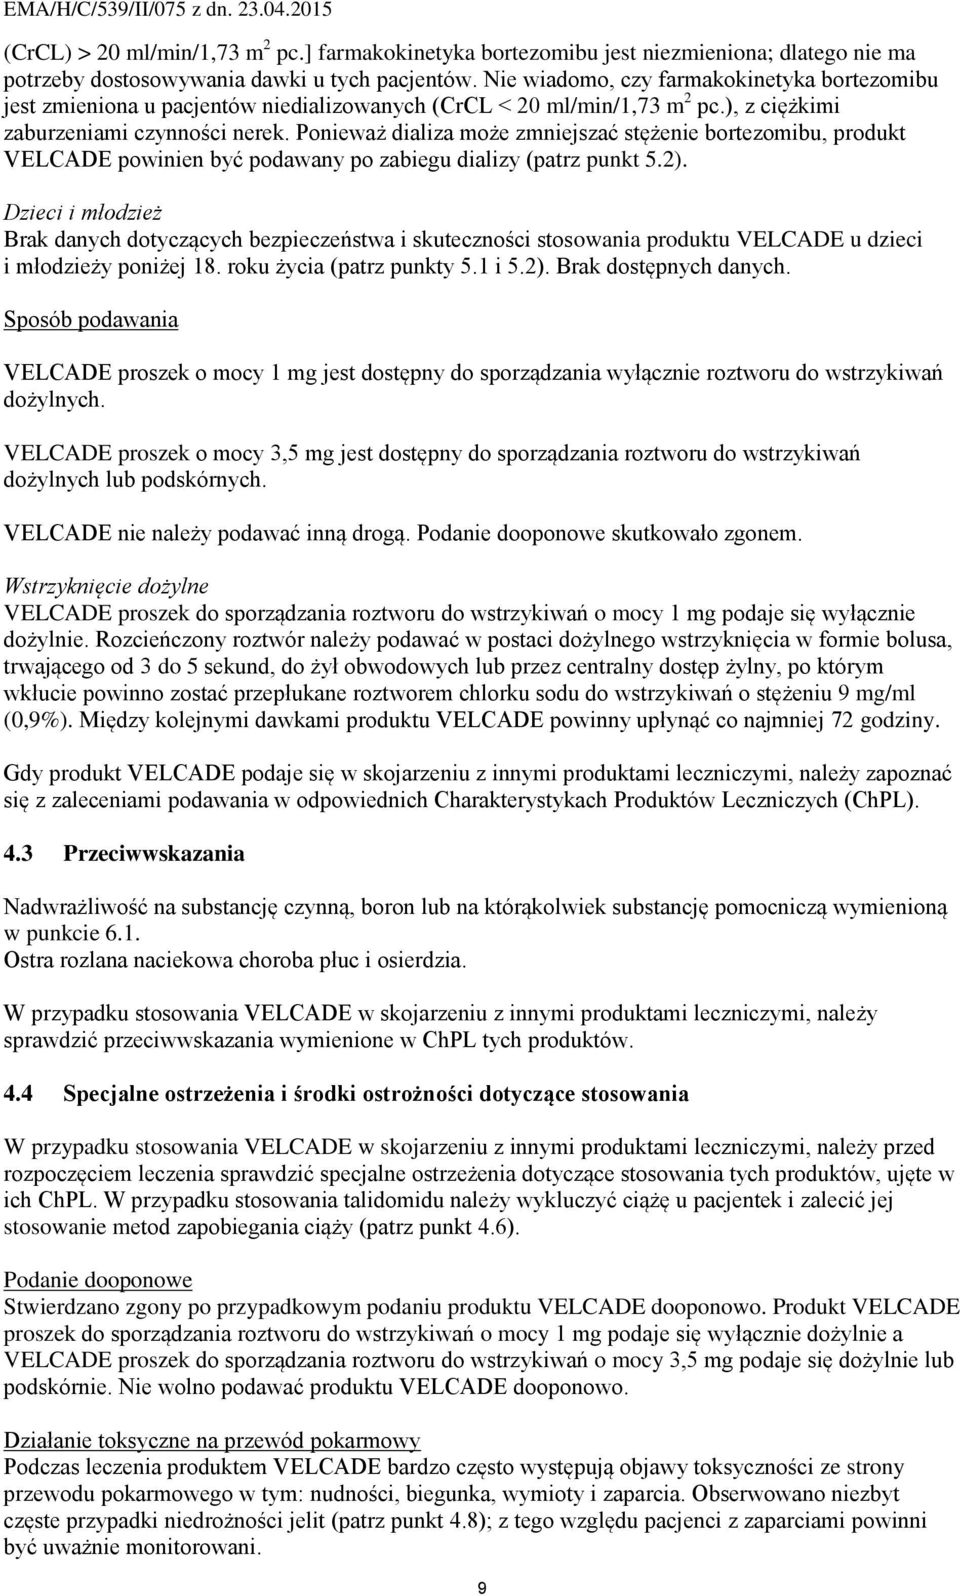 Ponieważ dializa może zmniejszać stężenie bortezomibu, produkt VELCADE powinien być podawany po zabiegu dializy (patrz punkt 5.2).